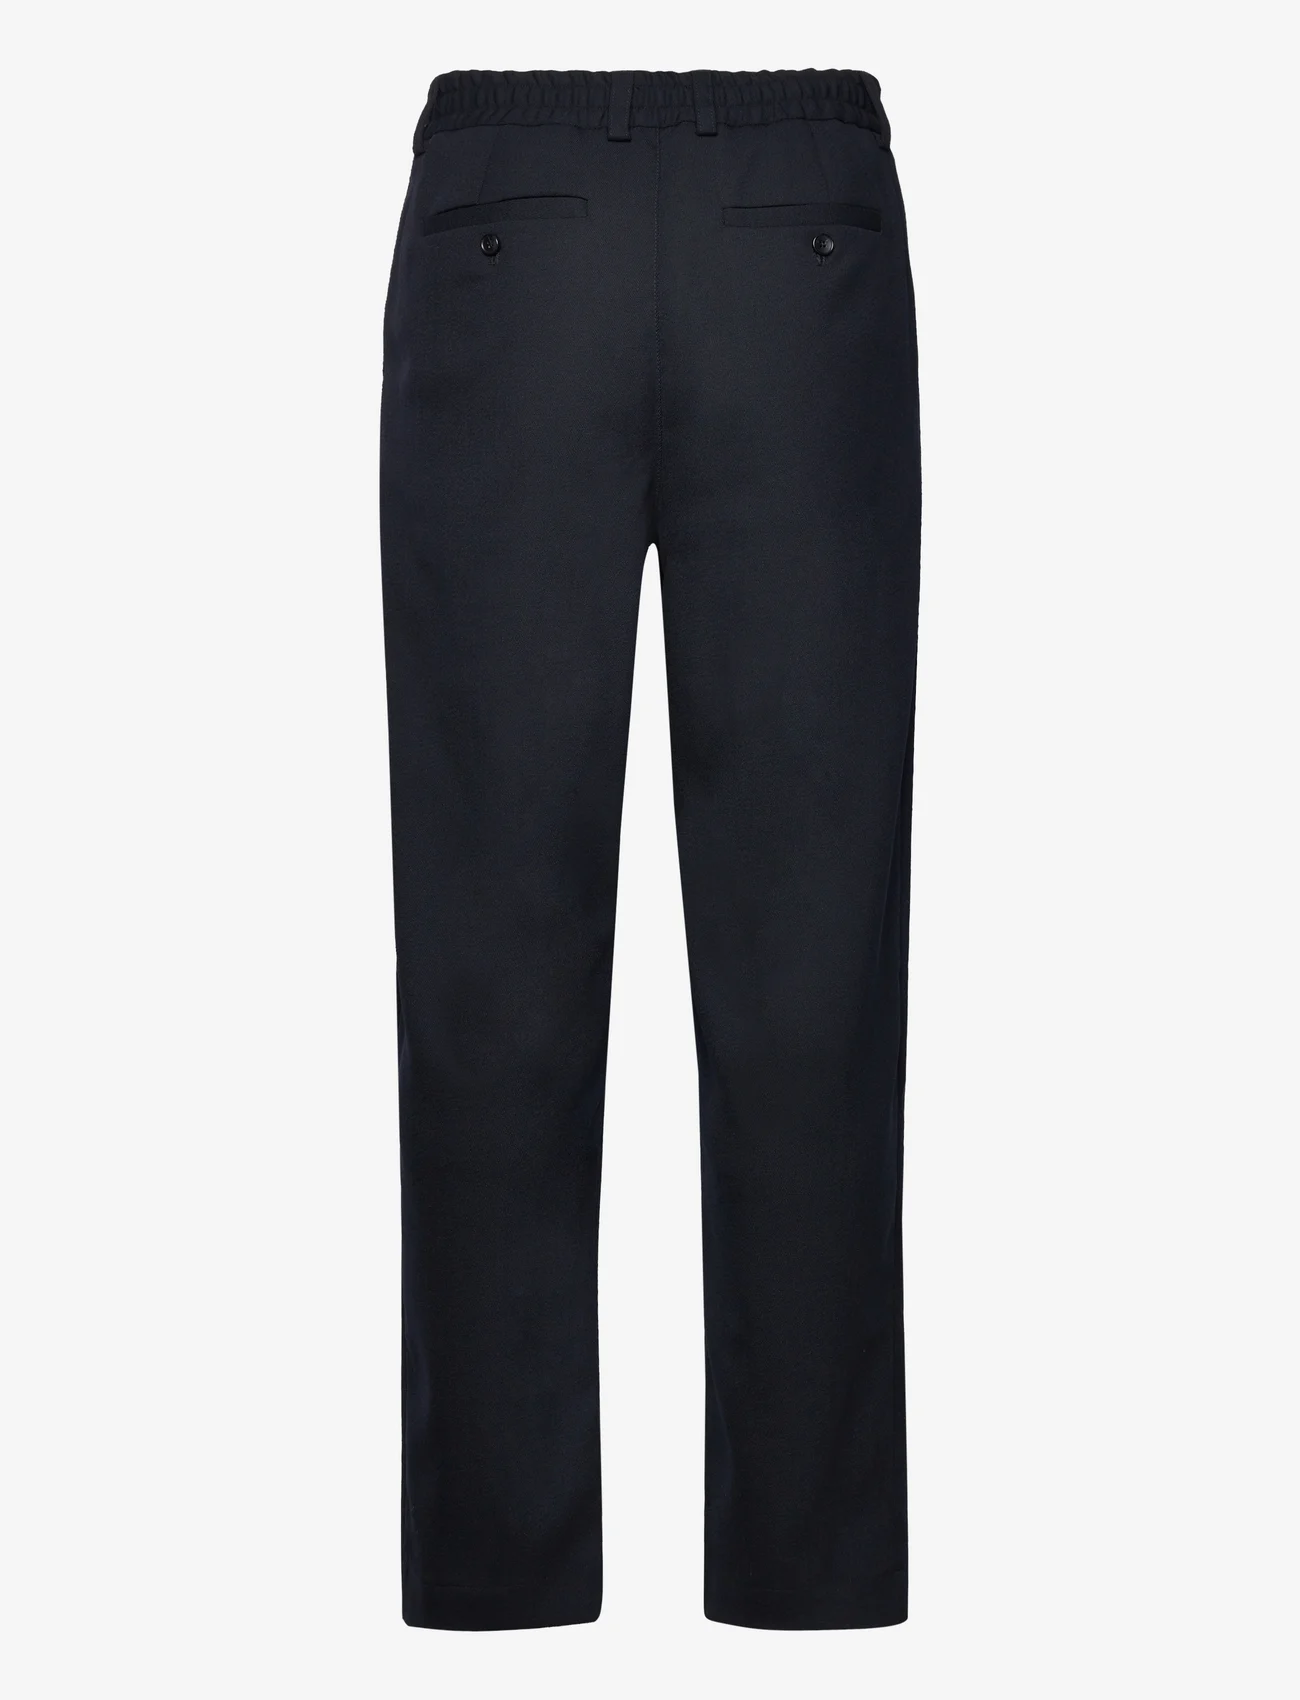 Libertine-Libertine - Agency - suit trousers - dark navy - 1